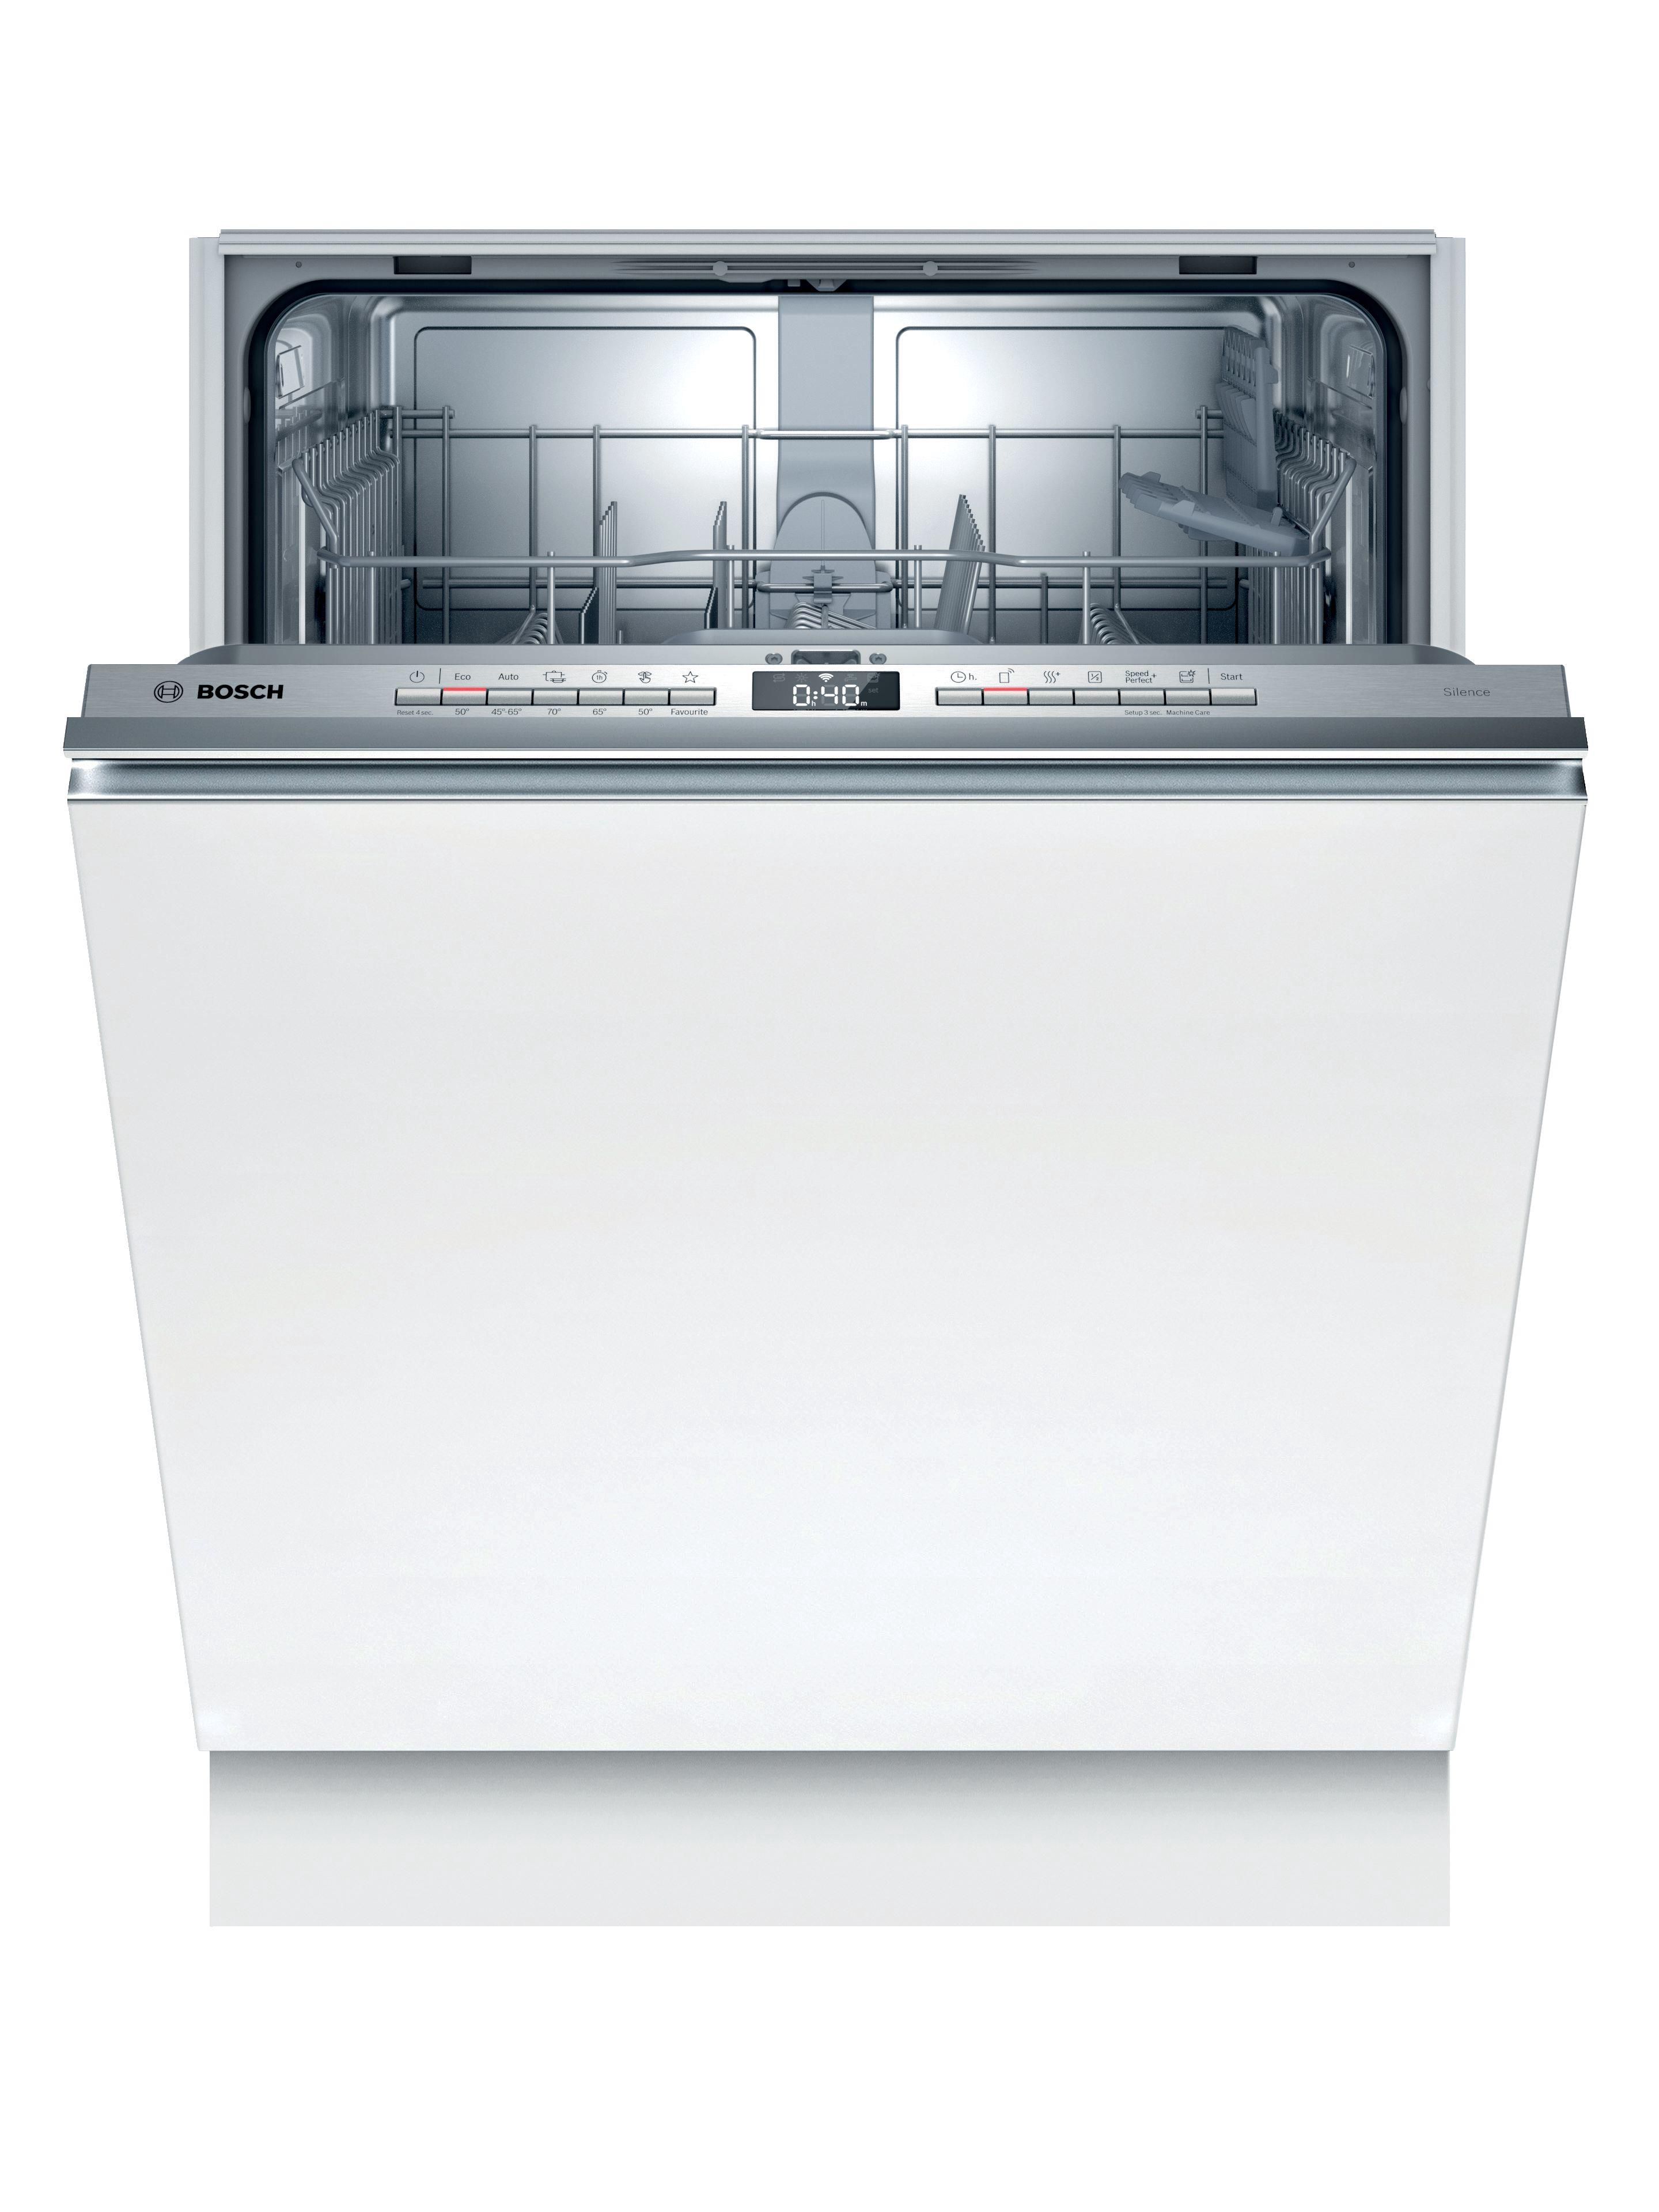 Встроенные посудомойки 45 см в спб. Bosch spv6hmx1mr. Встраиваемая посудомоечная машина Bosch spv2ikx10e. Посудомоечная машина Bosch spv2imy2er. Встраиваемая посудомоечная машина 60 см Bosch serie|4 sgv4hmx3fr.